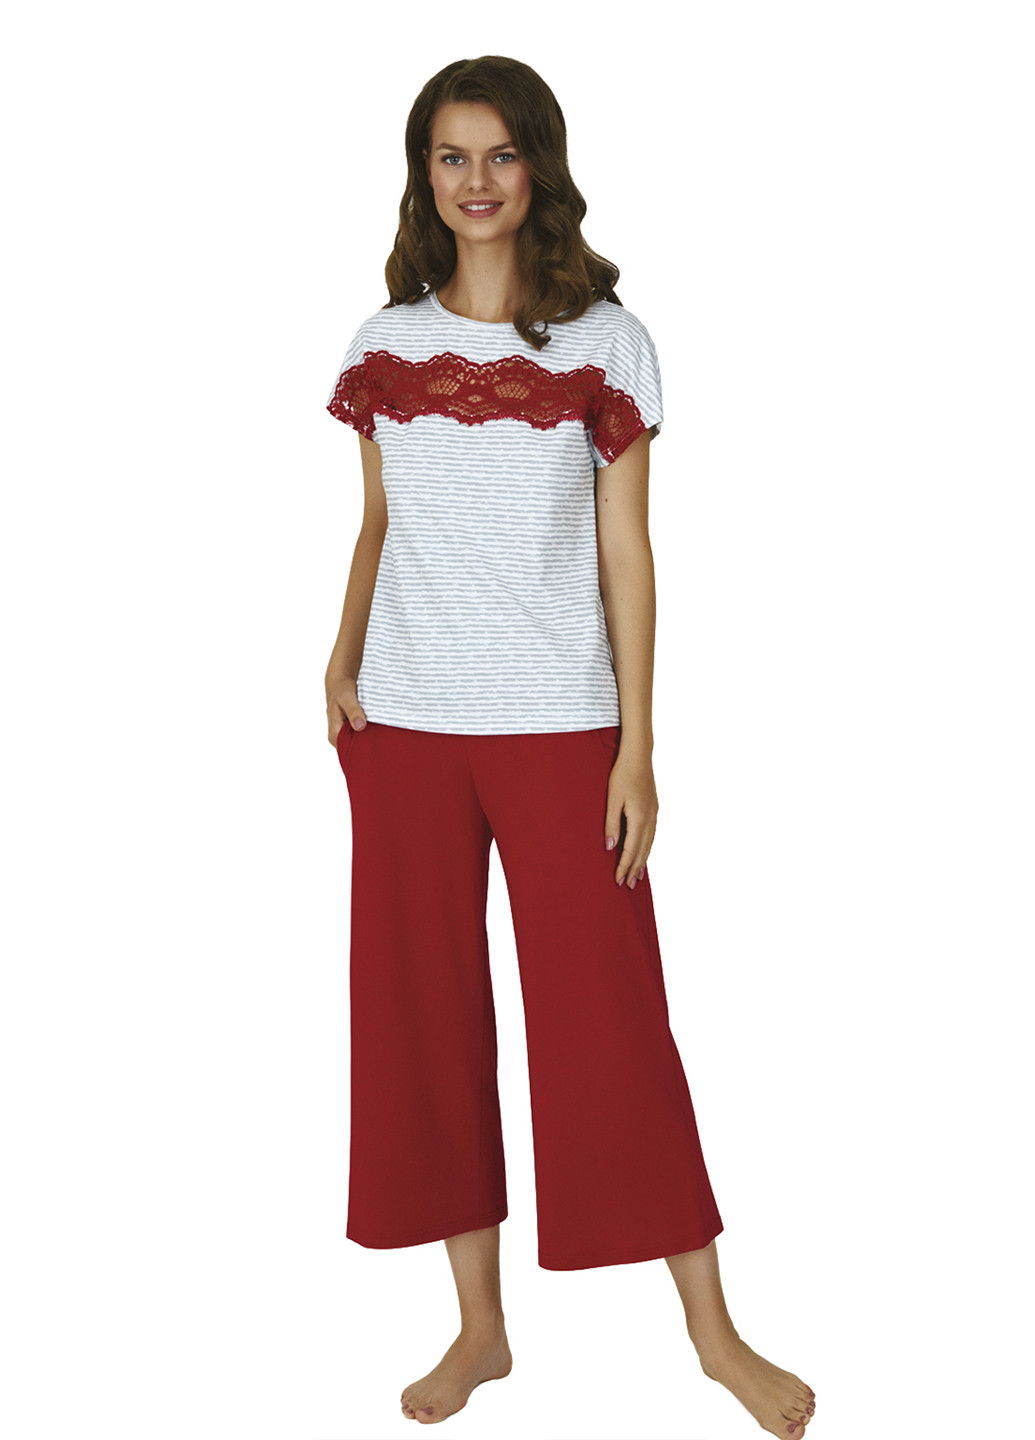 Комбинированная всесезон пижама (футболка, капри) футболка + капри Ellen